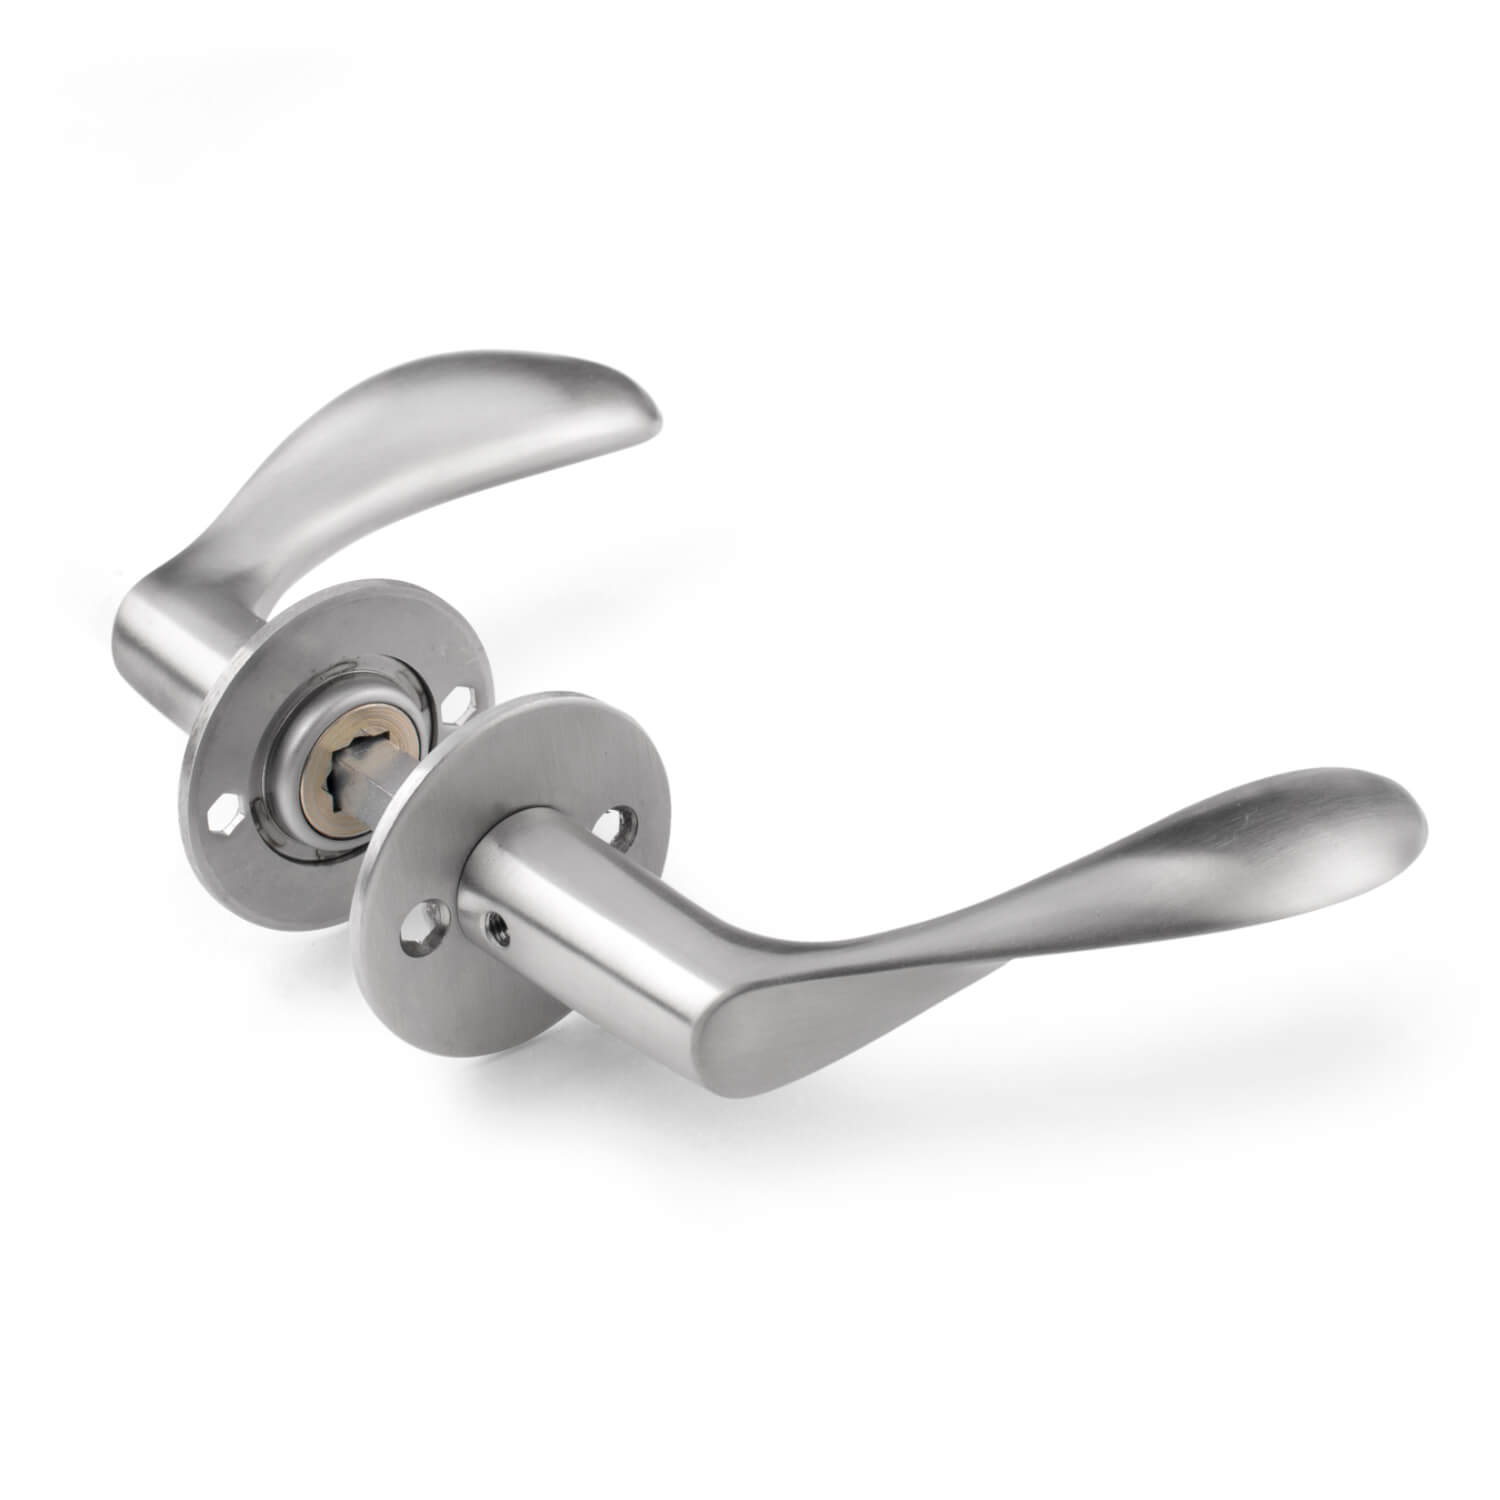 Arne Jacobsen door handle - AJ handle - Brushed steel - Small